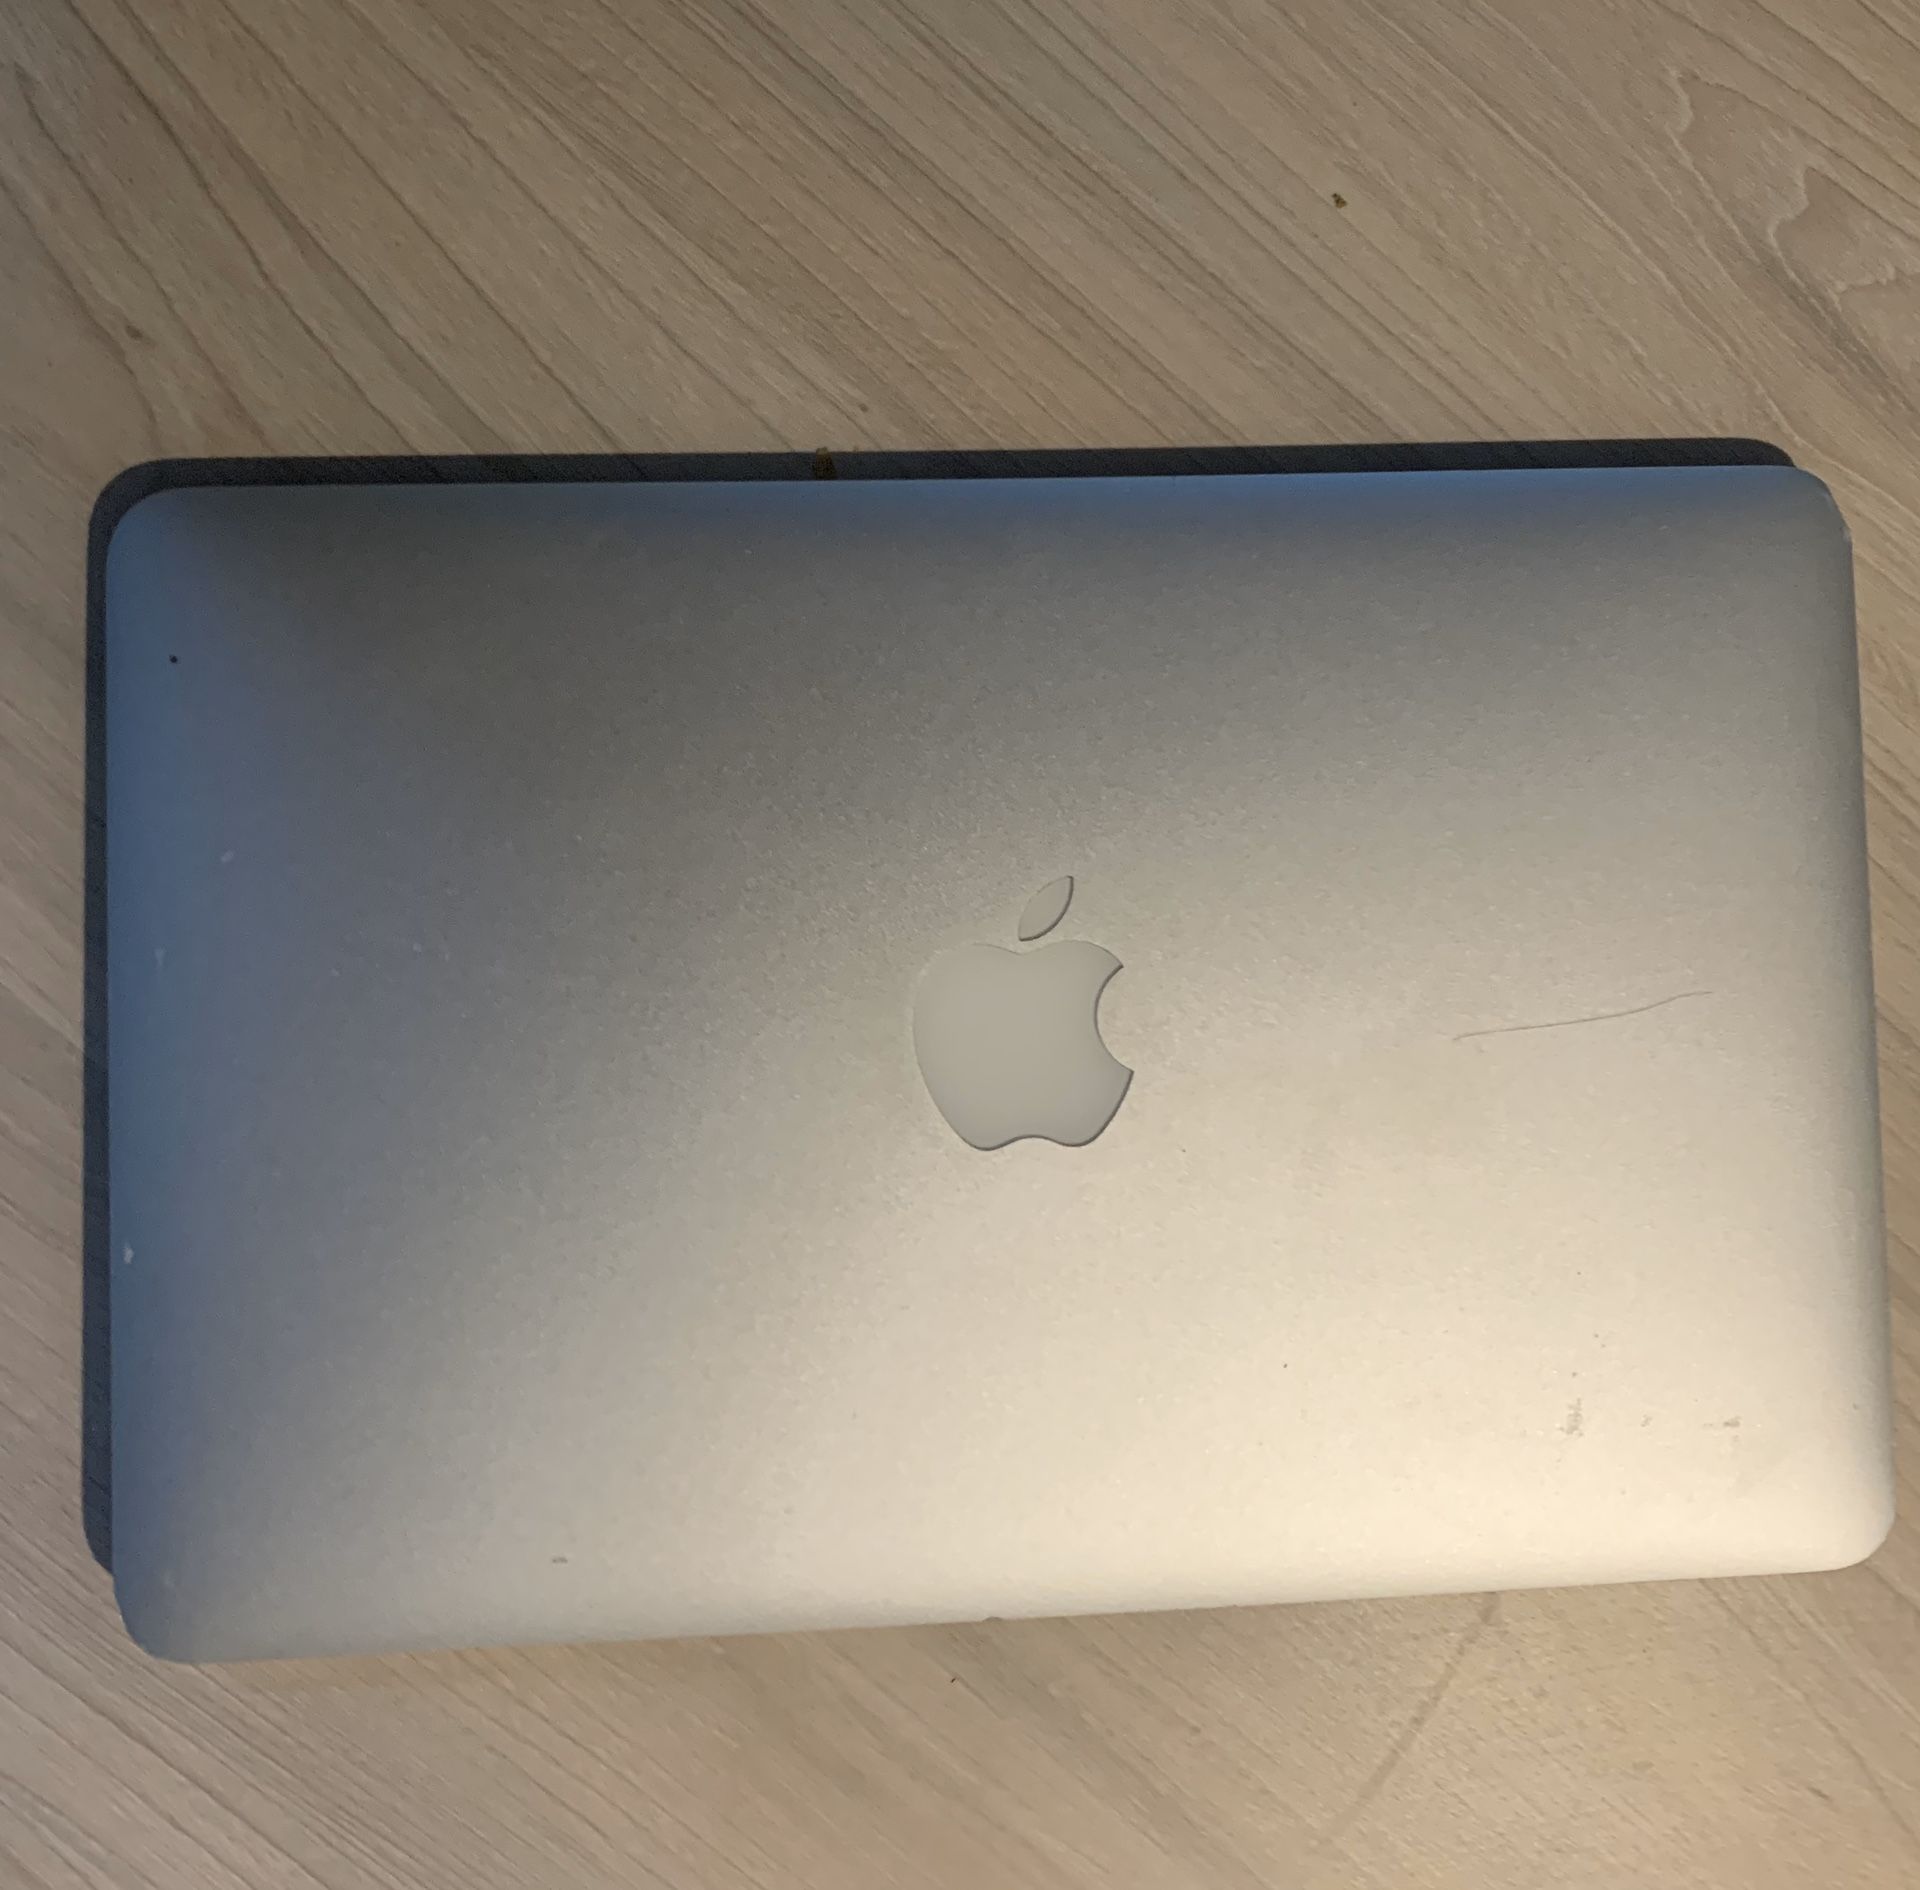 MacBook Air 11”